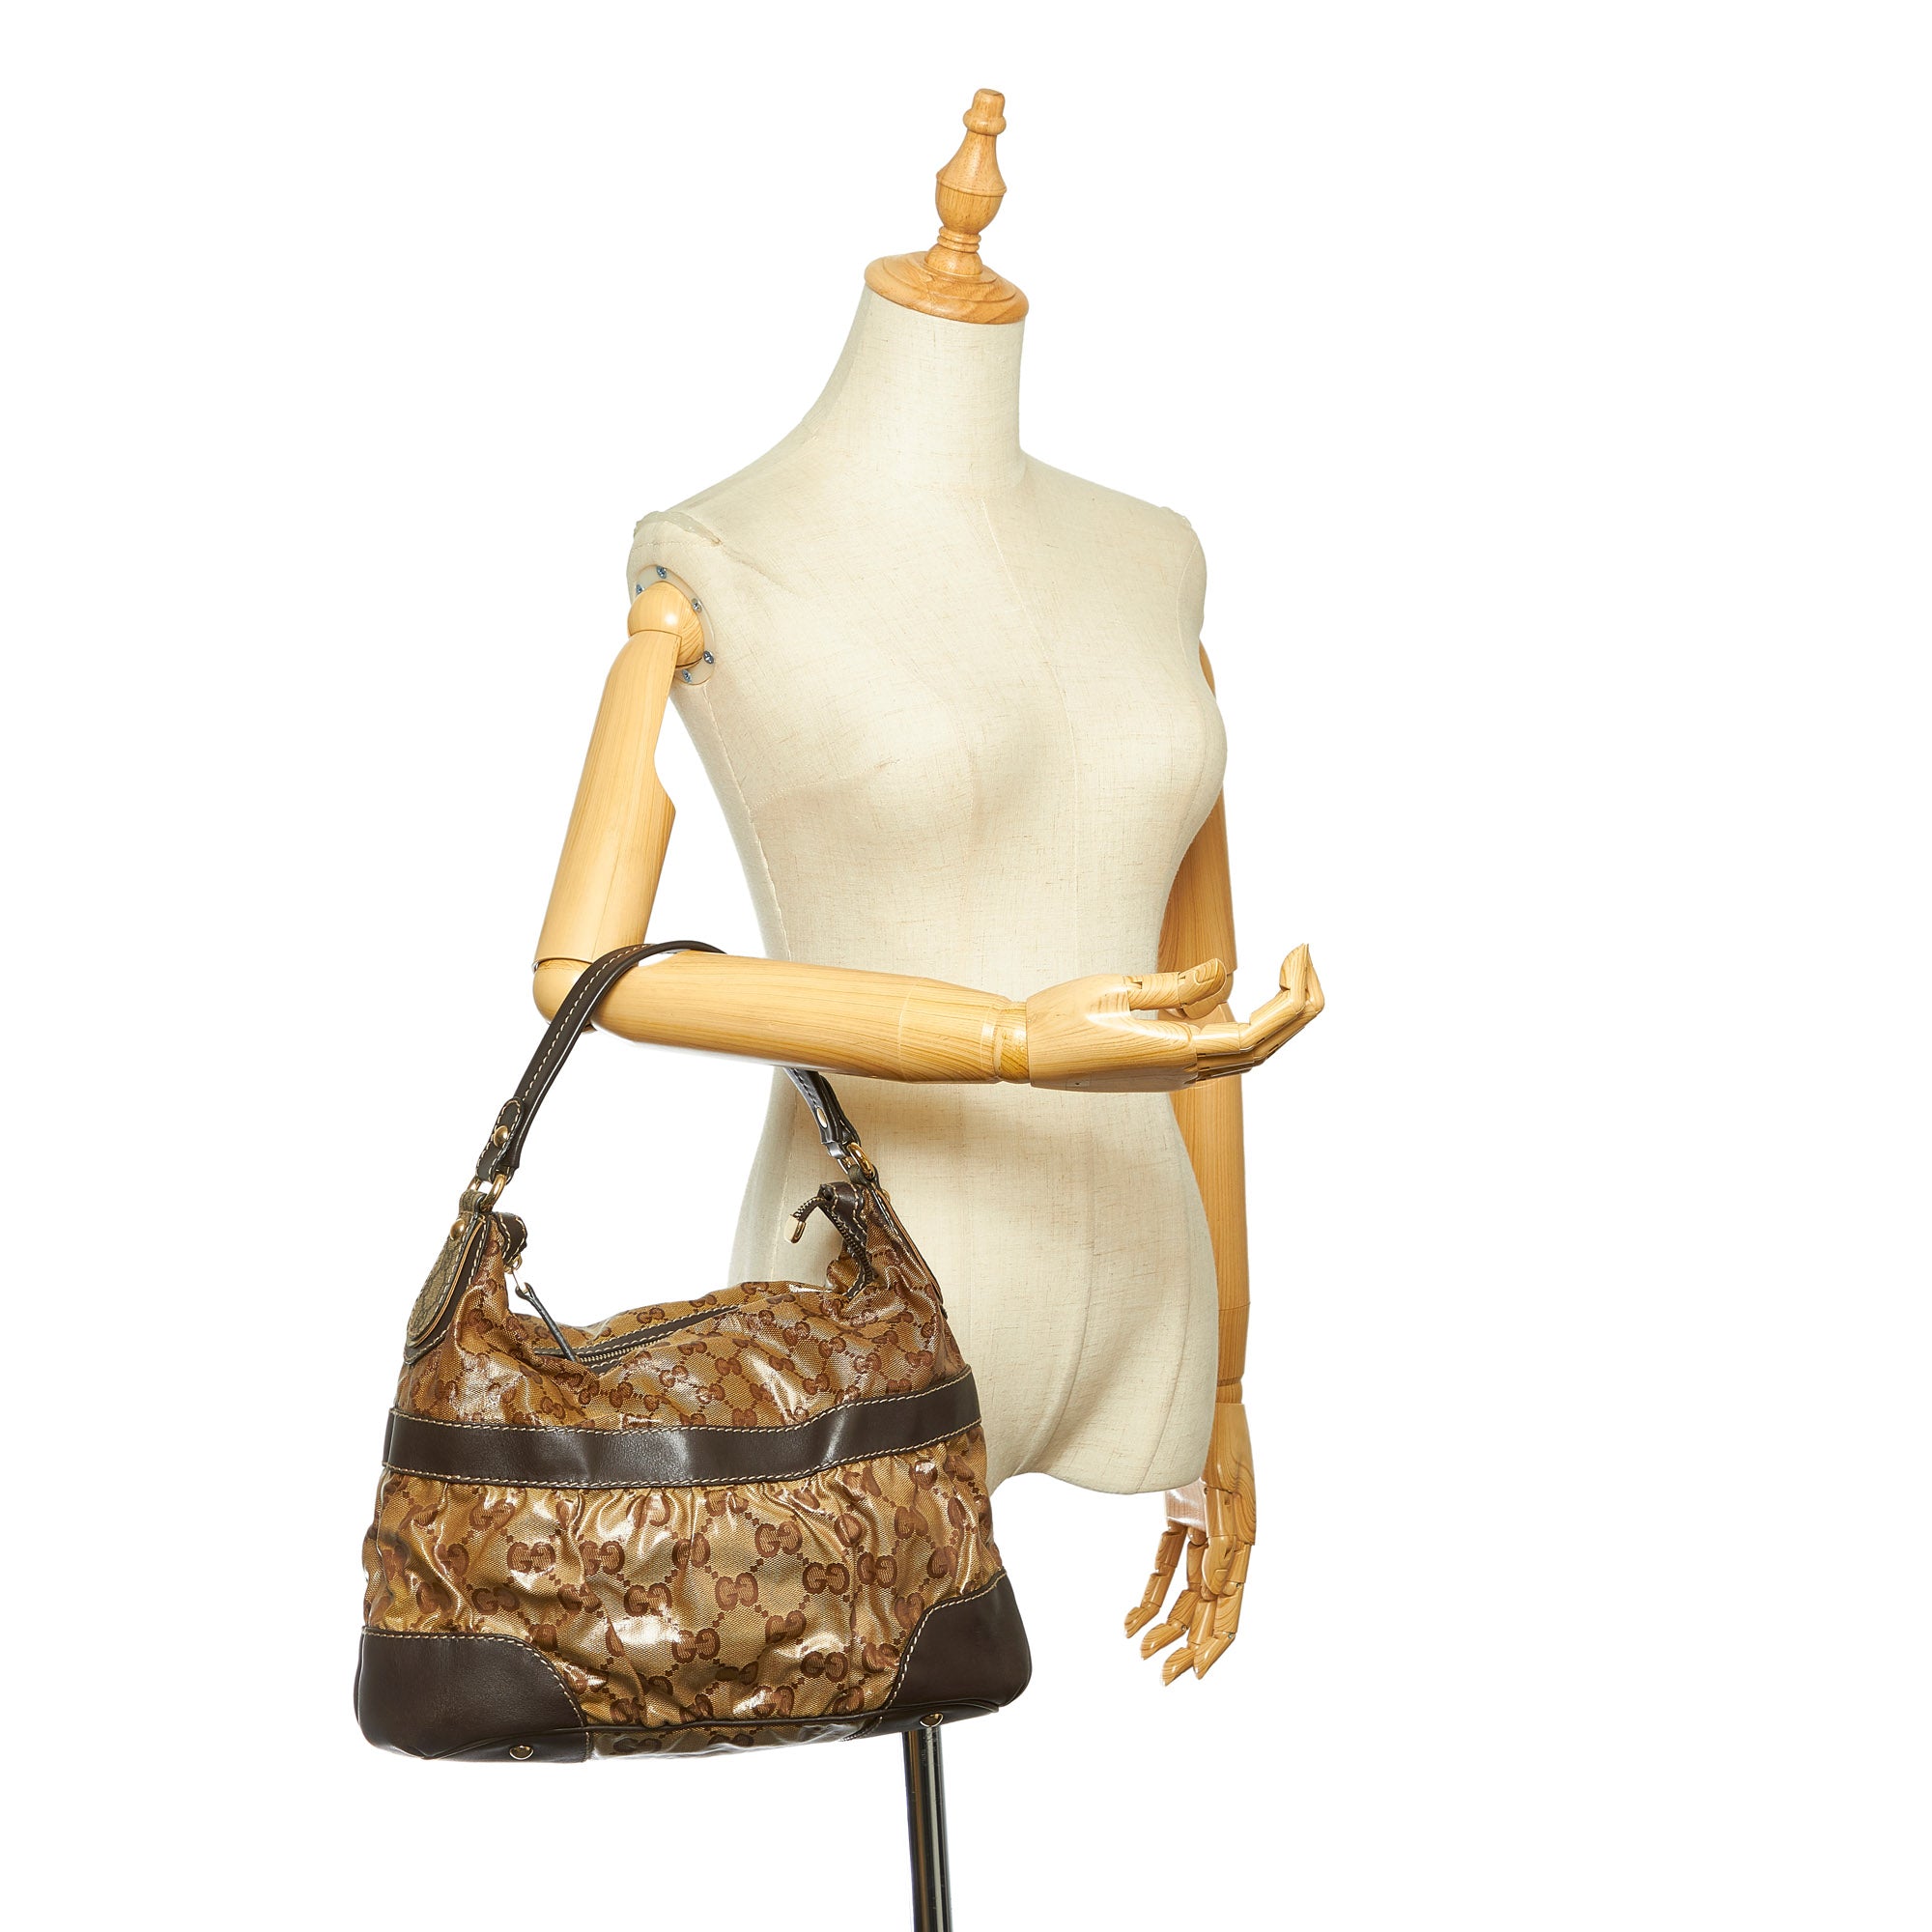 Brown Gucci GG Crystal Shoulder Bag